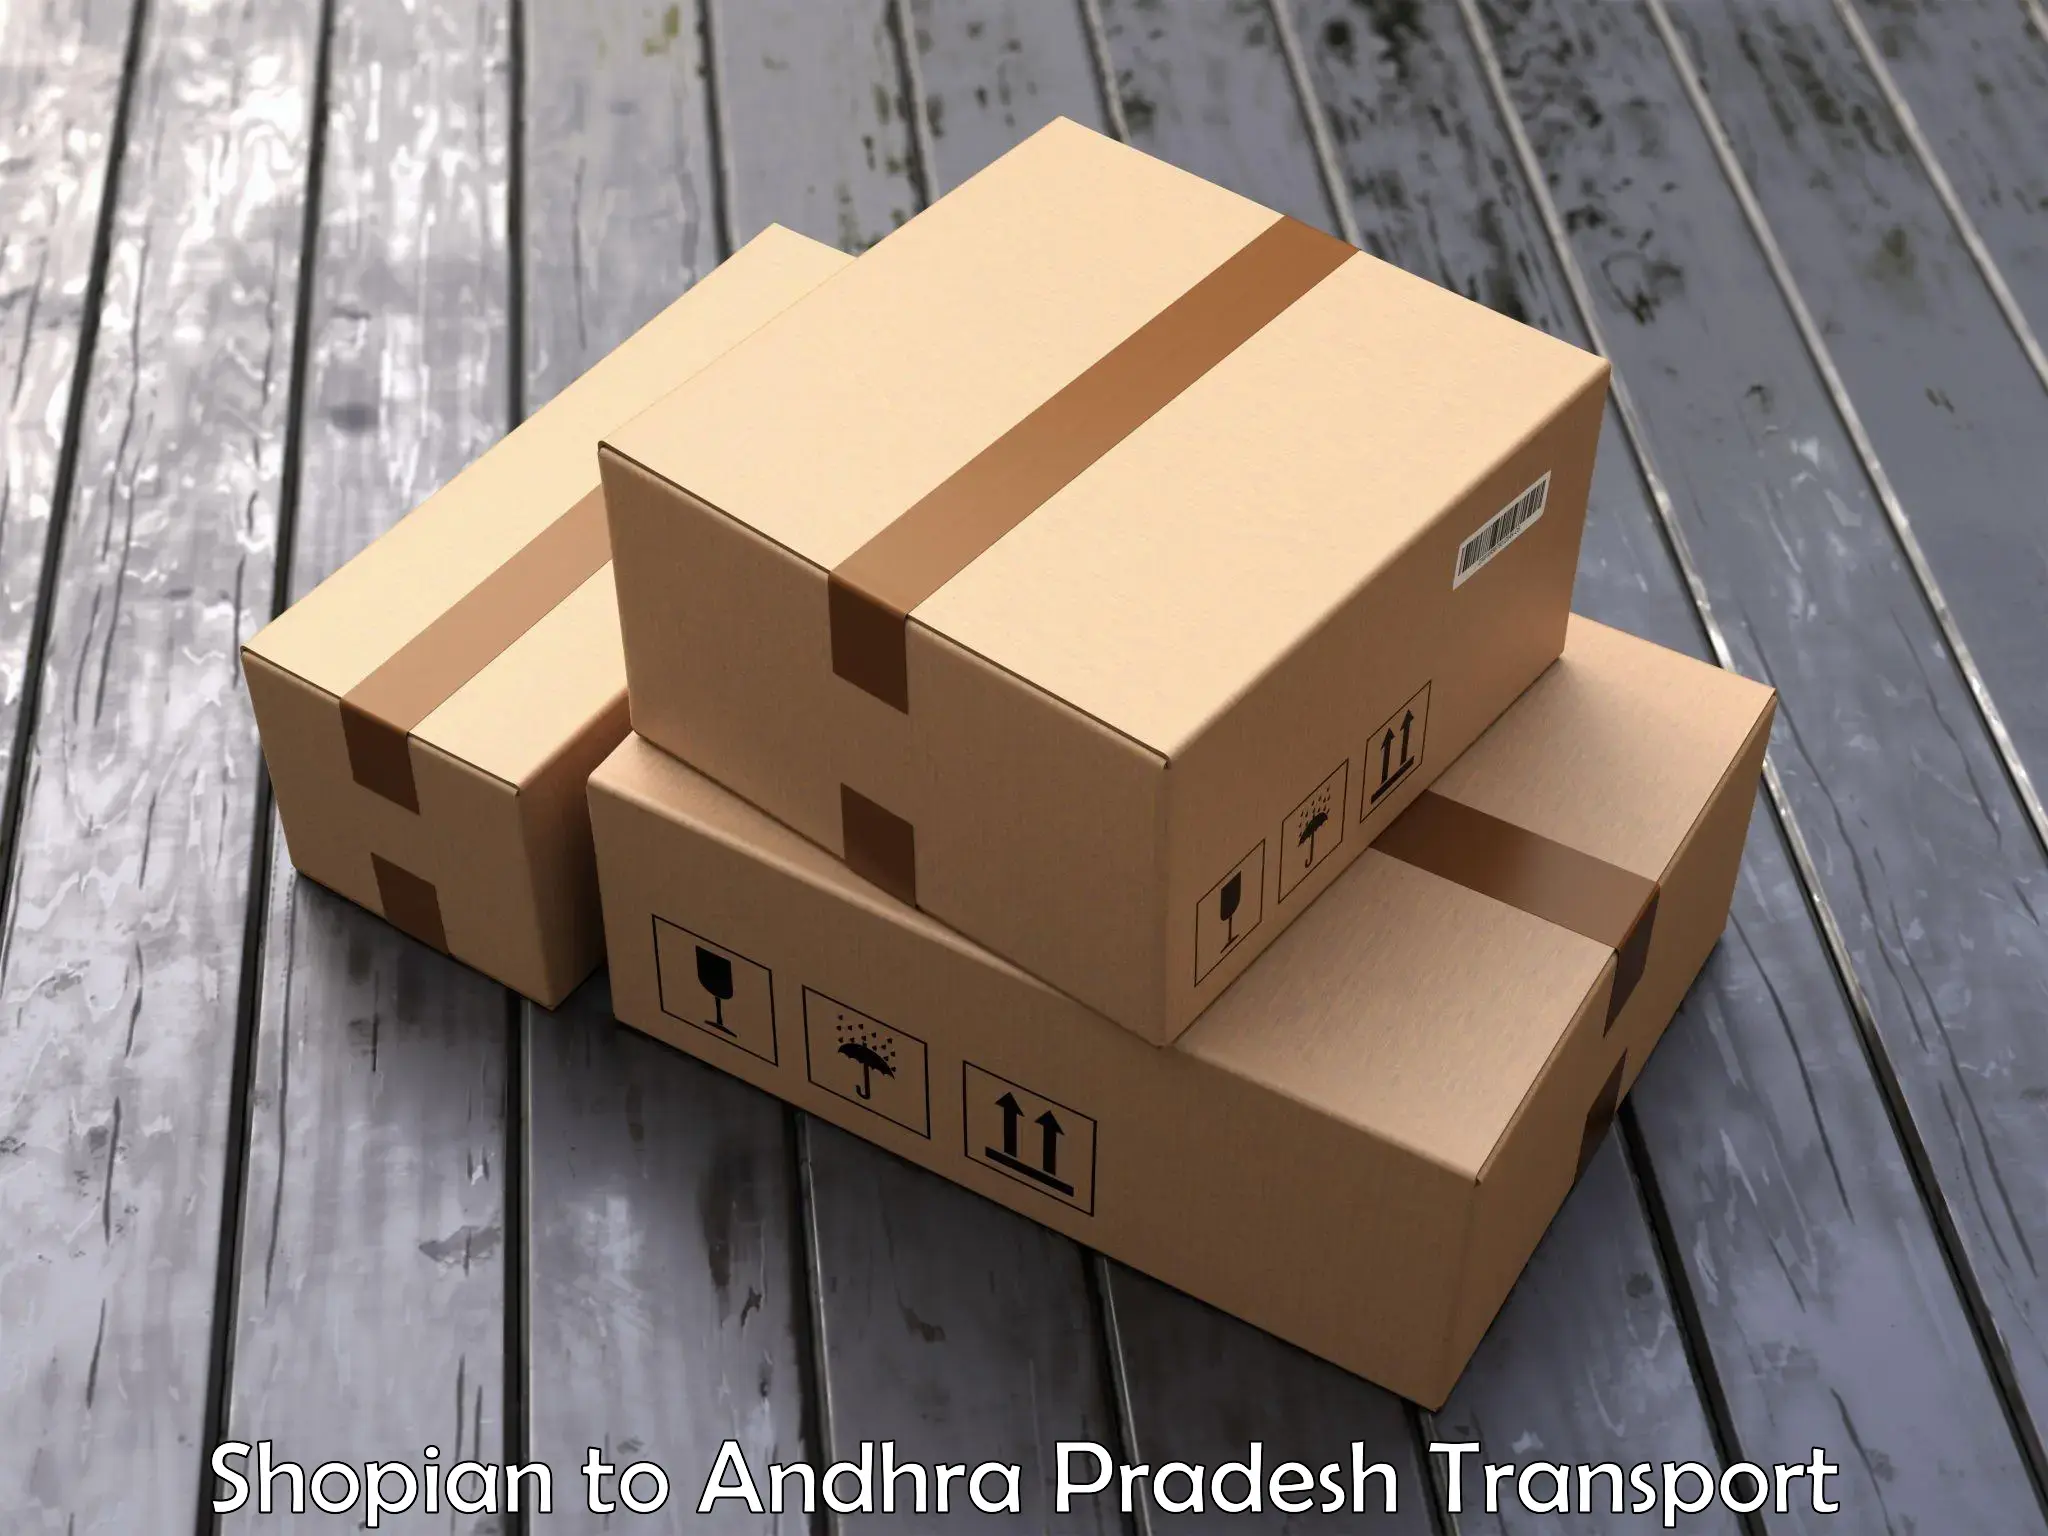 Vehicle parcel service Shopian to Ponnur